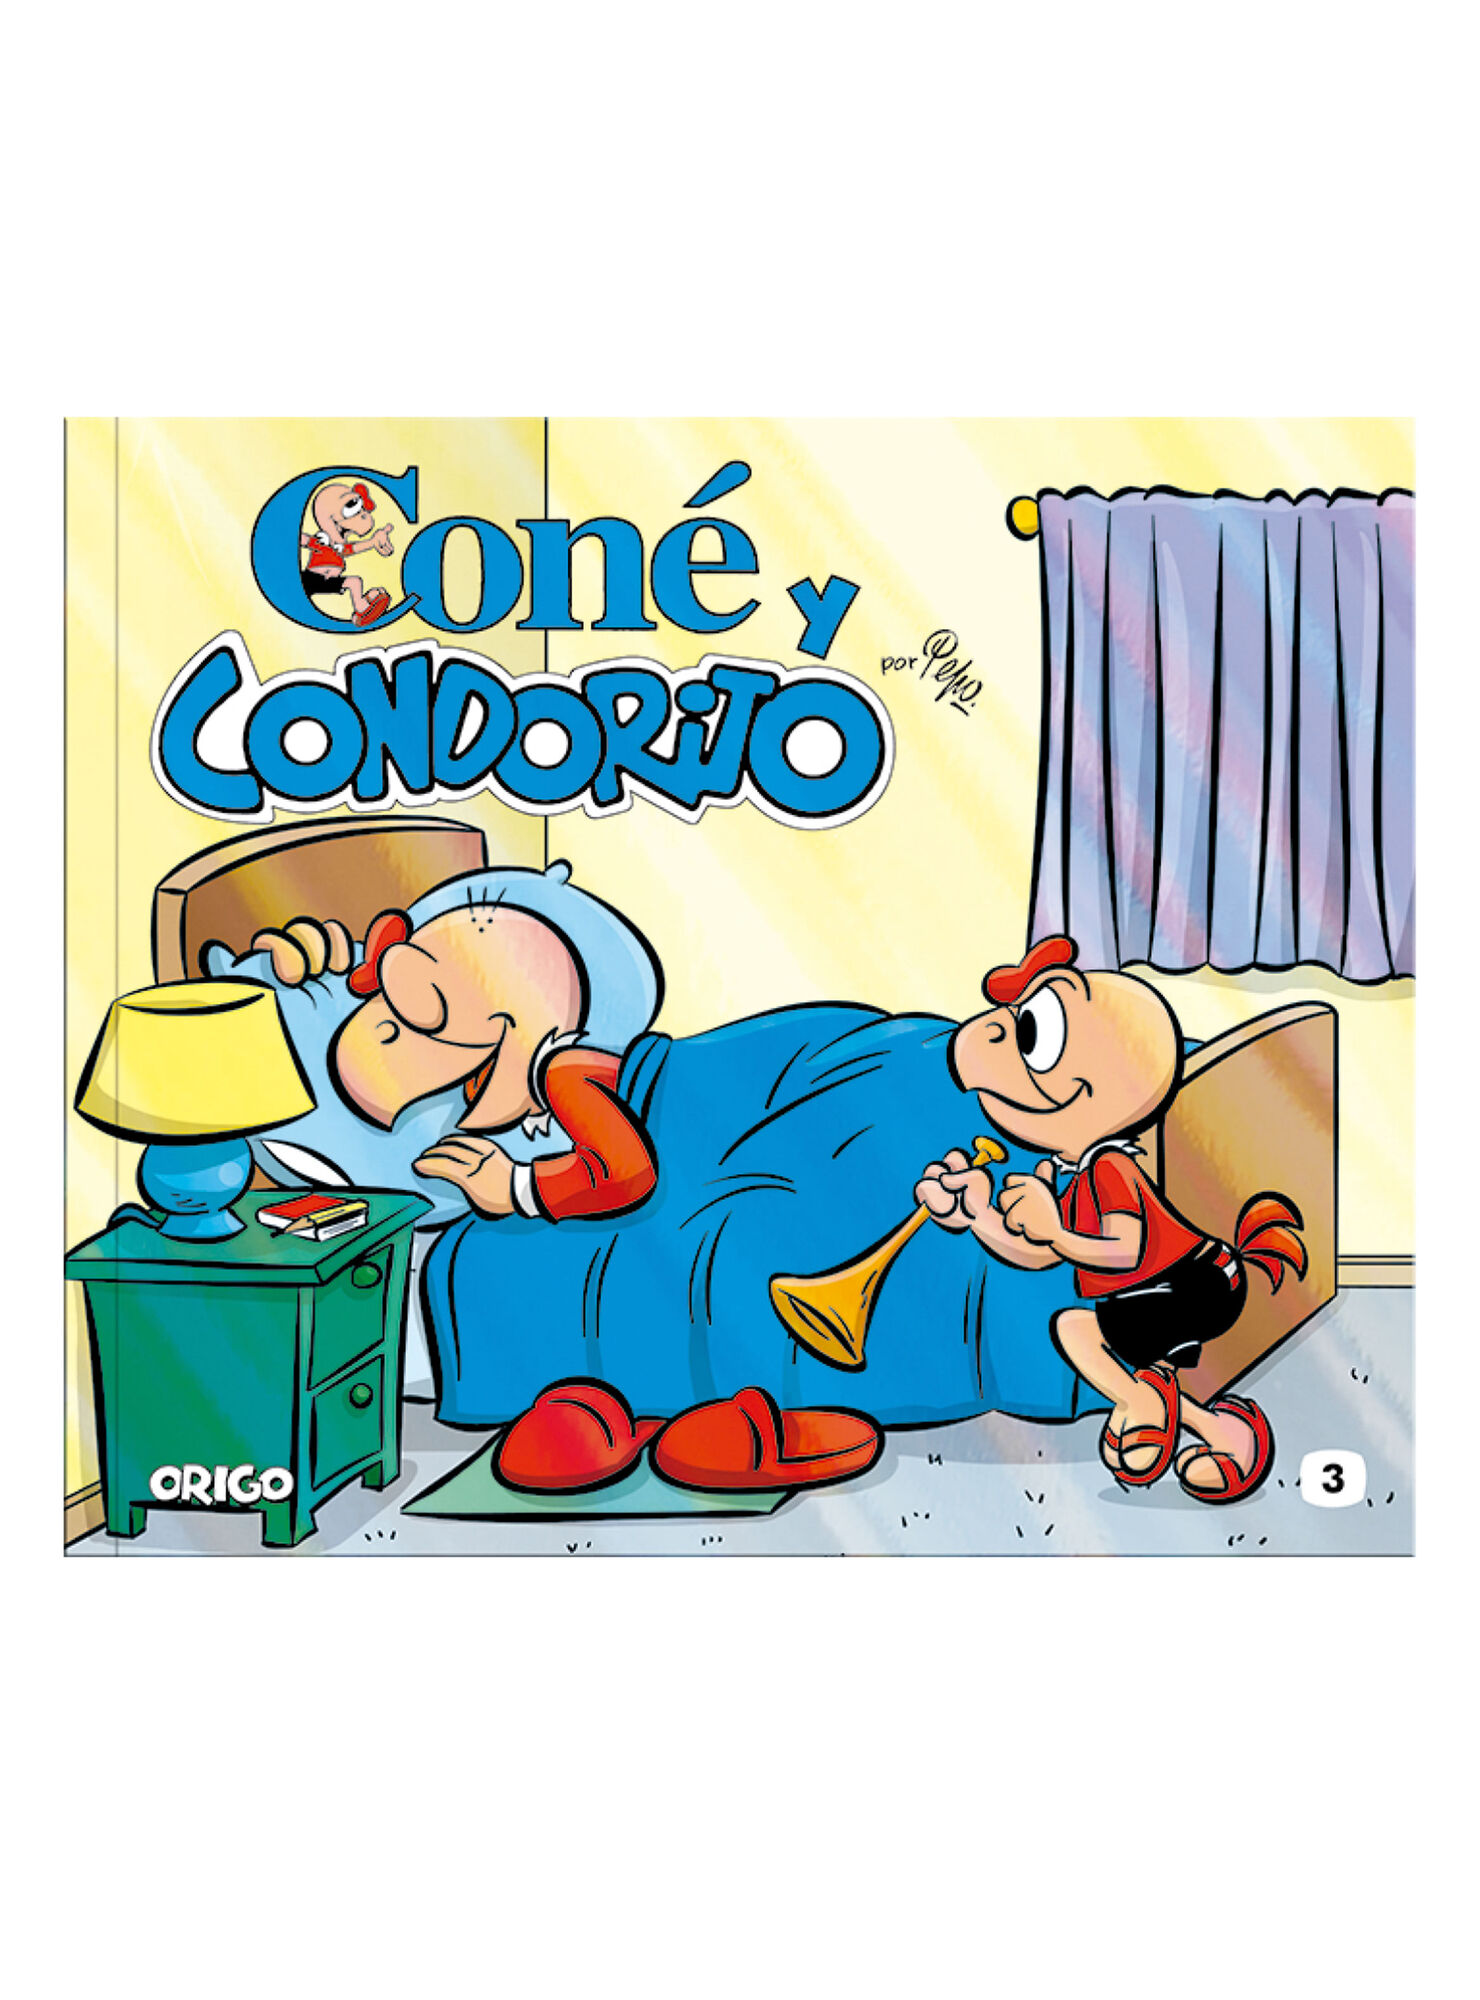 Cómic Origo Ediciones Coné y Condorito N° 3 - Pepo - Comics 